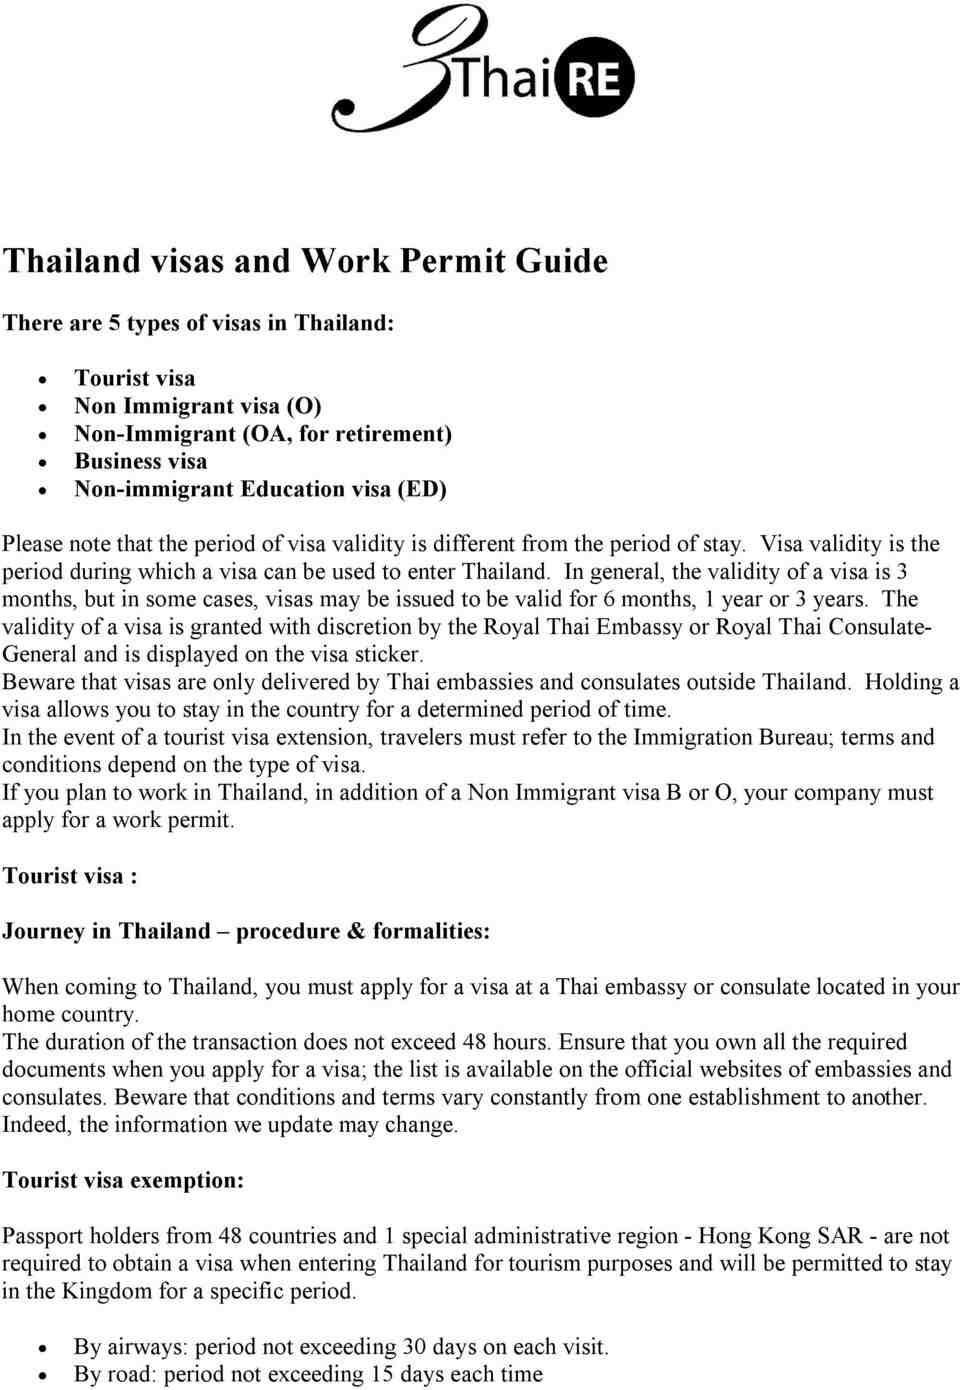 Ist das Leben in Thailand teuer?